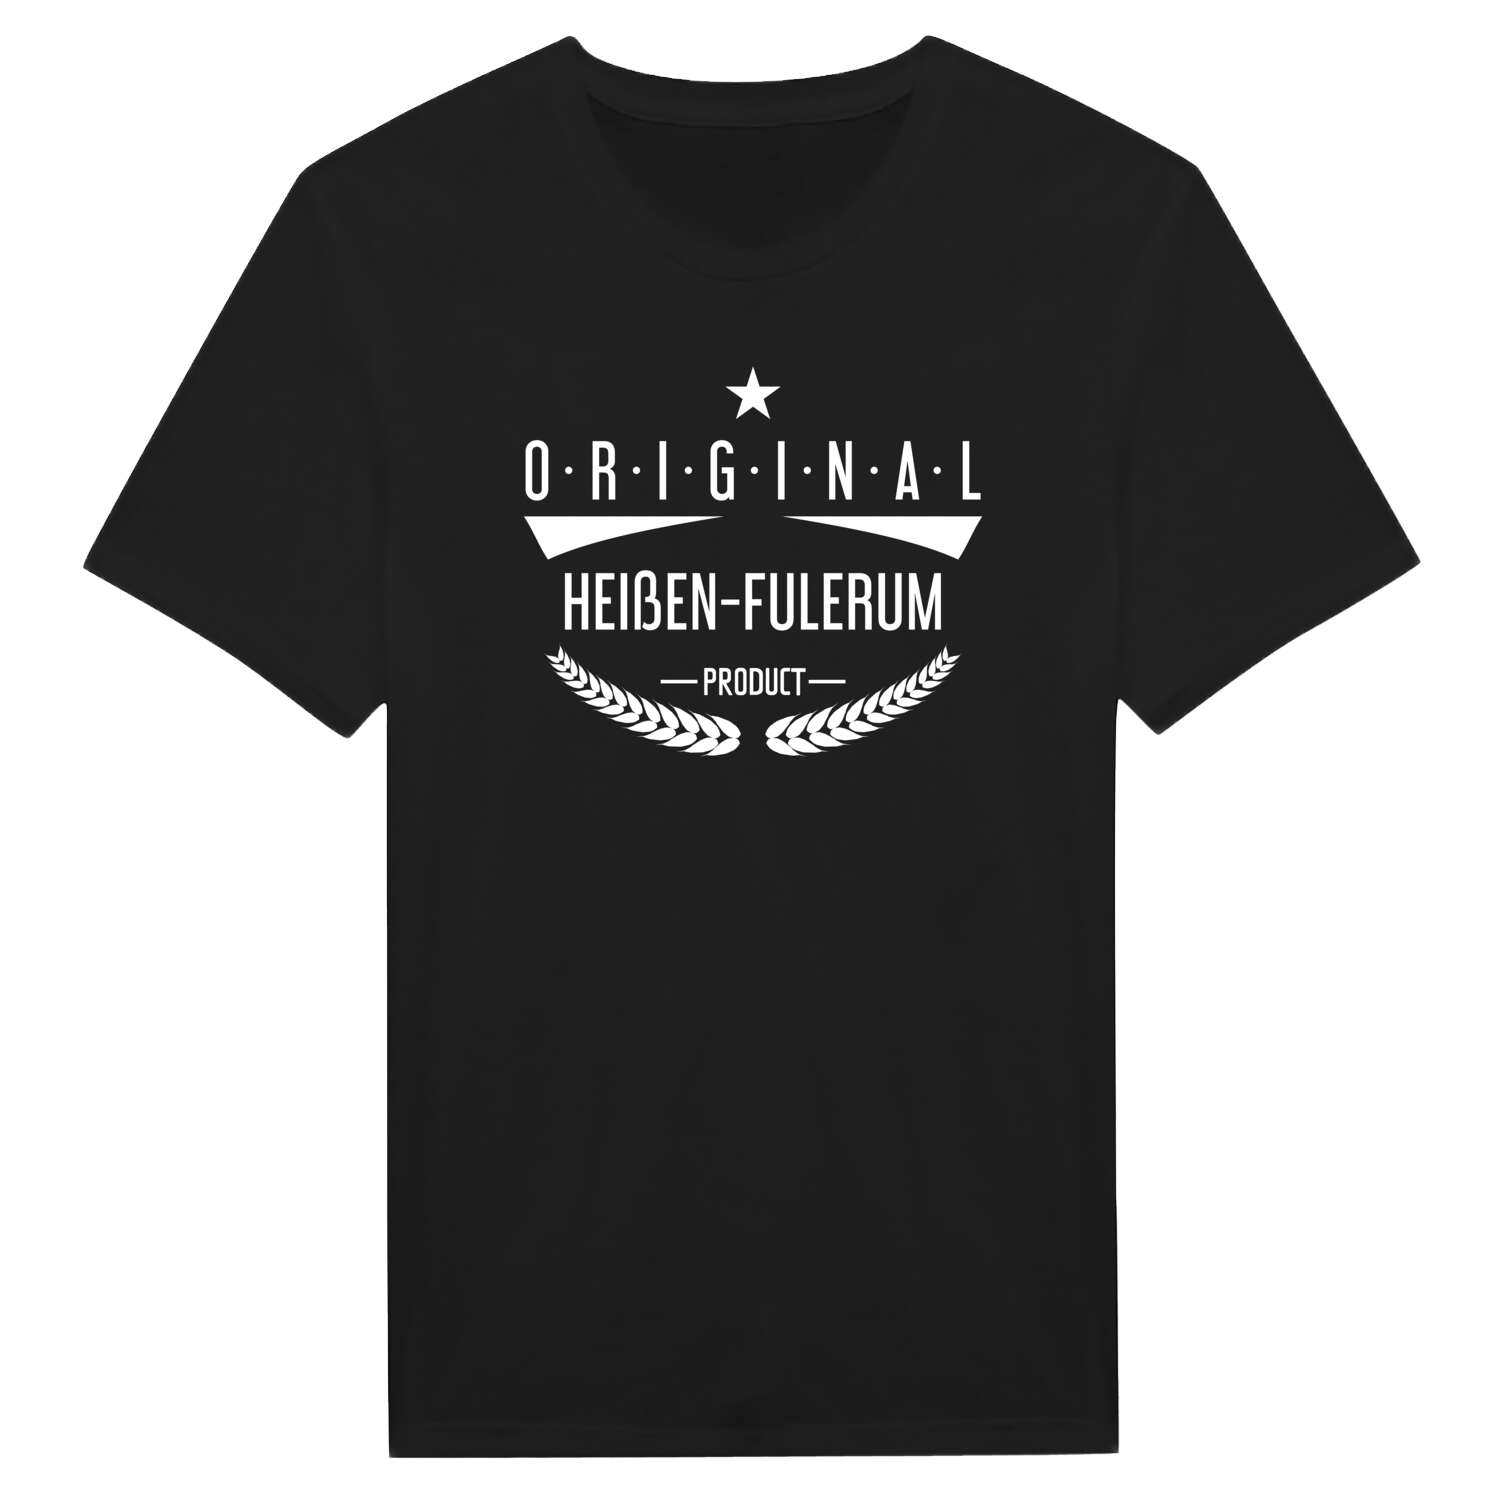 Heißen-Fulerum T-Shirt »Original Product«